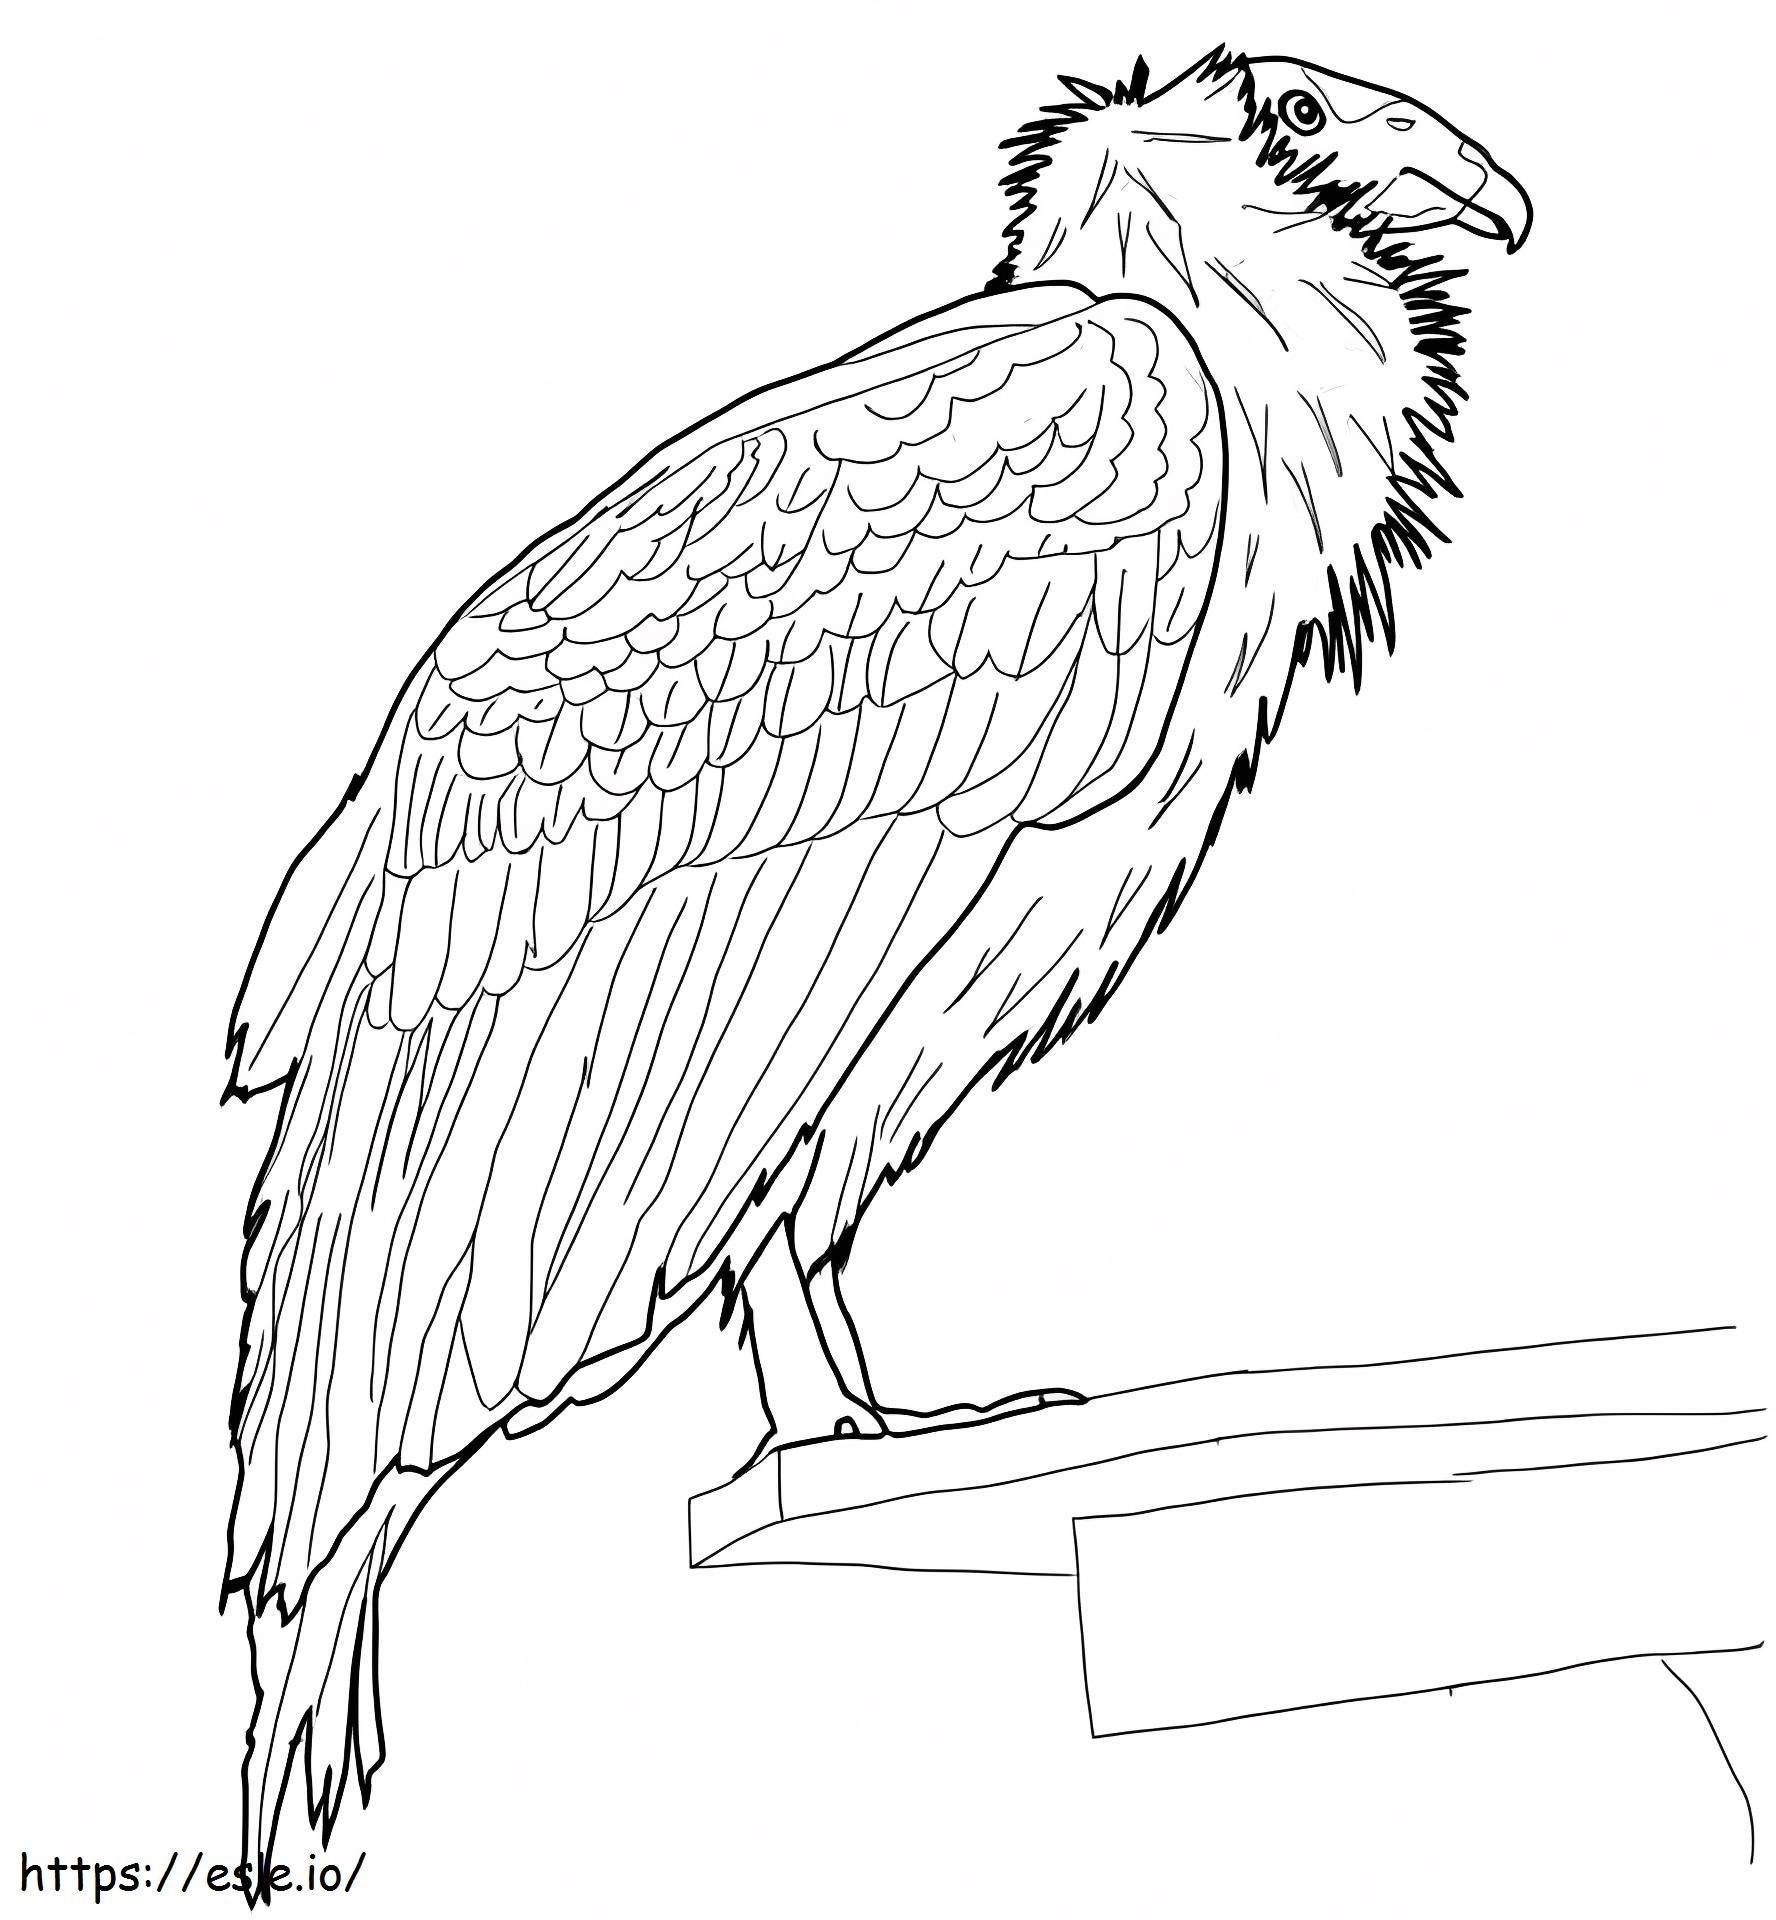 Perched California Condor coloring page